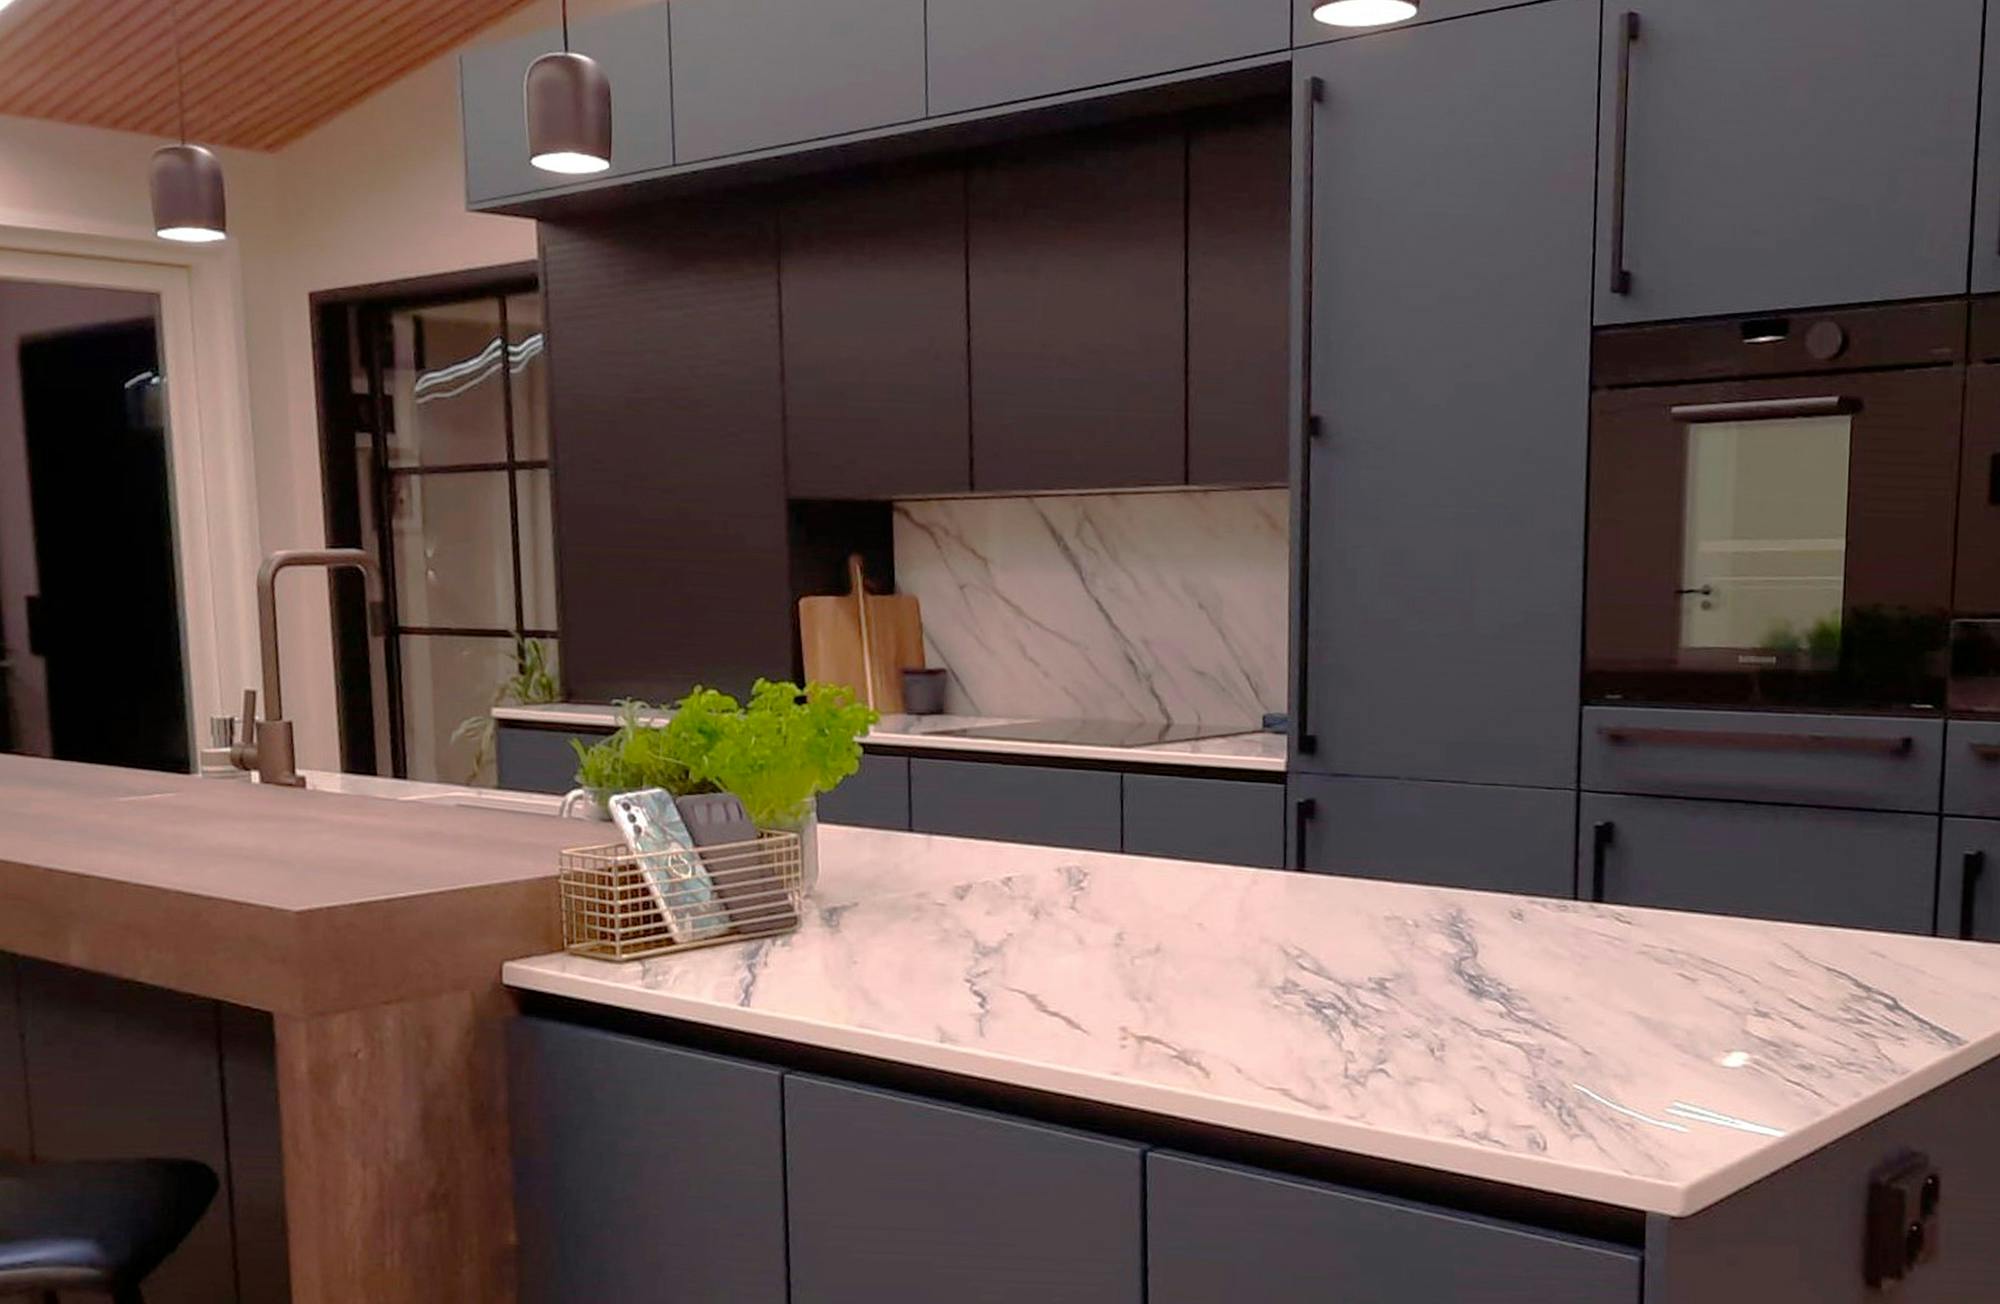 Numero immagine 32 della sezione corrente di Interior designer Katja Suominen chose DKTN Rem countertops for her new kitchen di Cosentino Italia